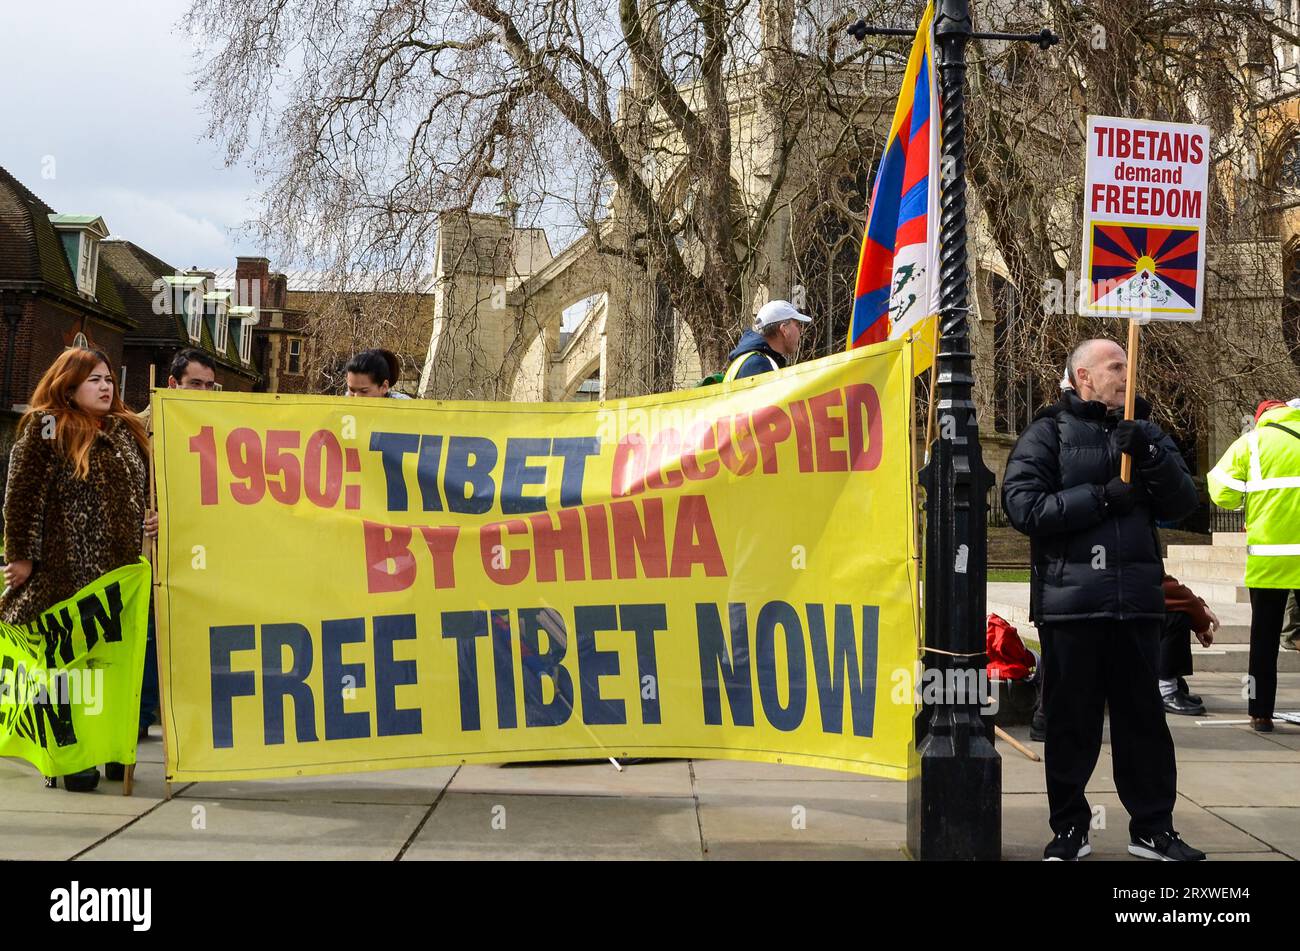 Free Tibet protestiert jetzt in London, Großbritannien. 1950. Tibet von China besetzt, Banner der Demonstranten. Schild. Tibeter fordern Freiheit Stockfoto